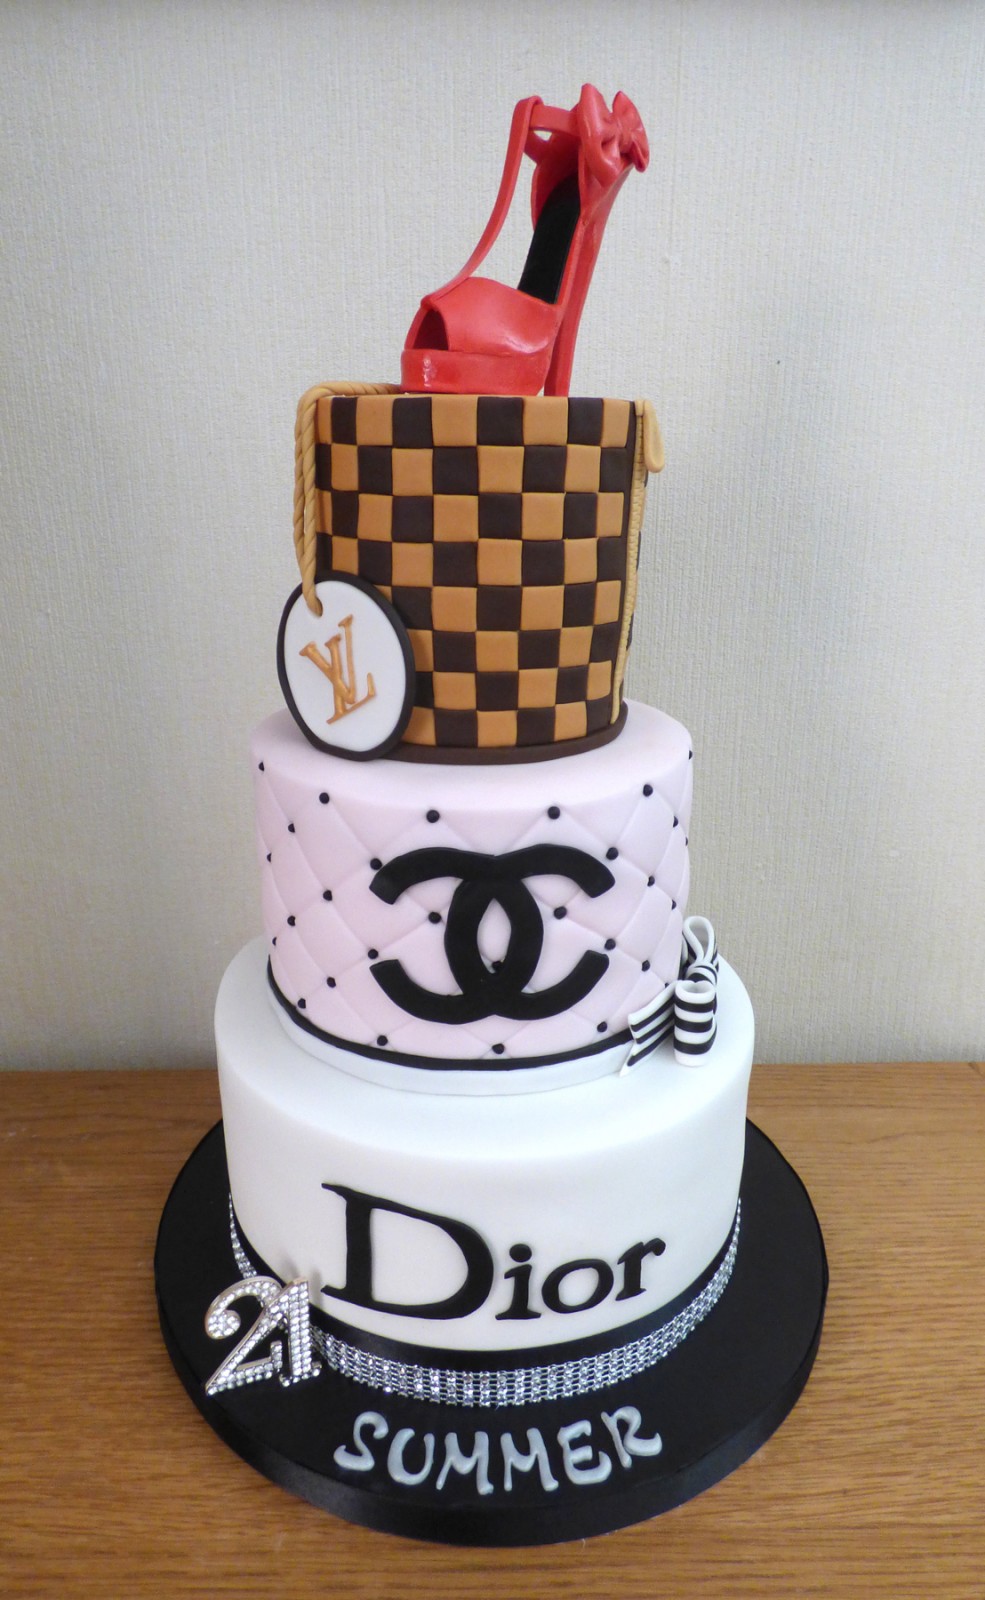 3 Tier Designer Themed Birthday Cake | Susie's Cakes